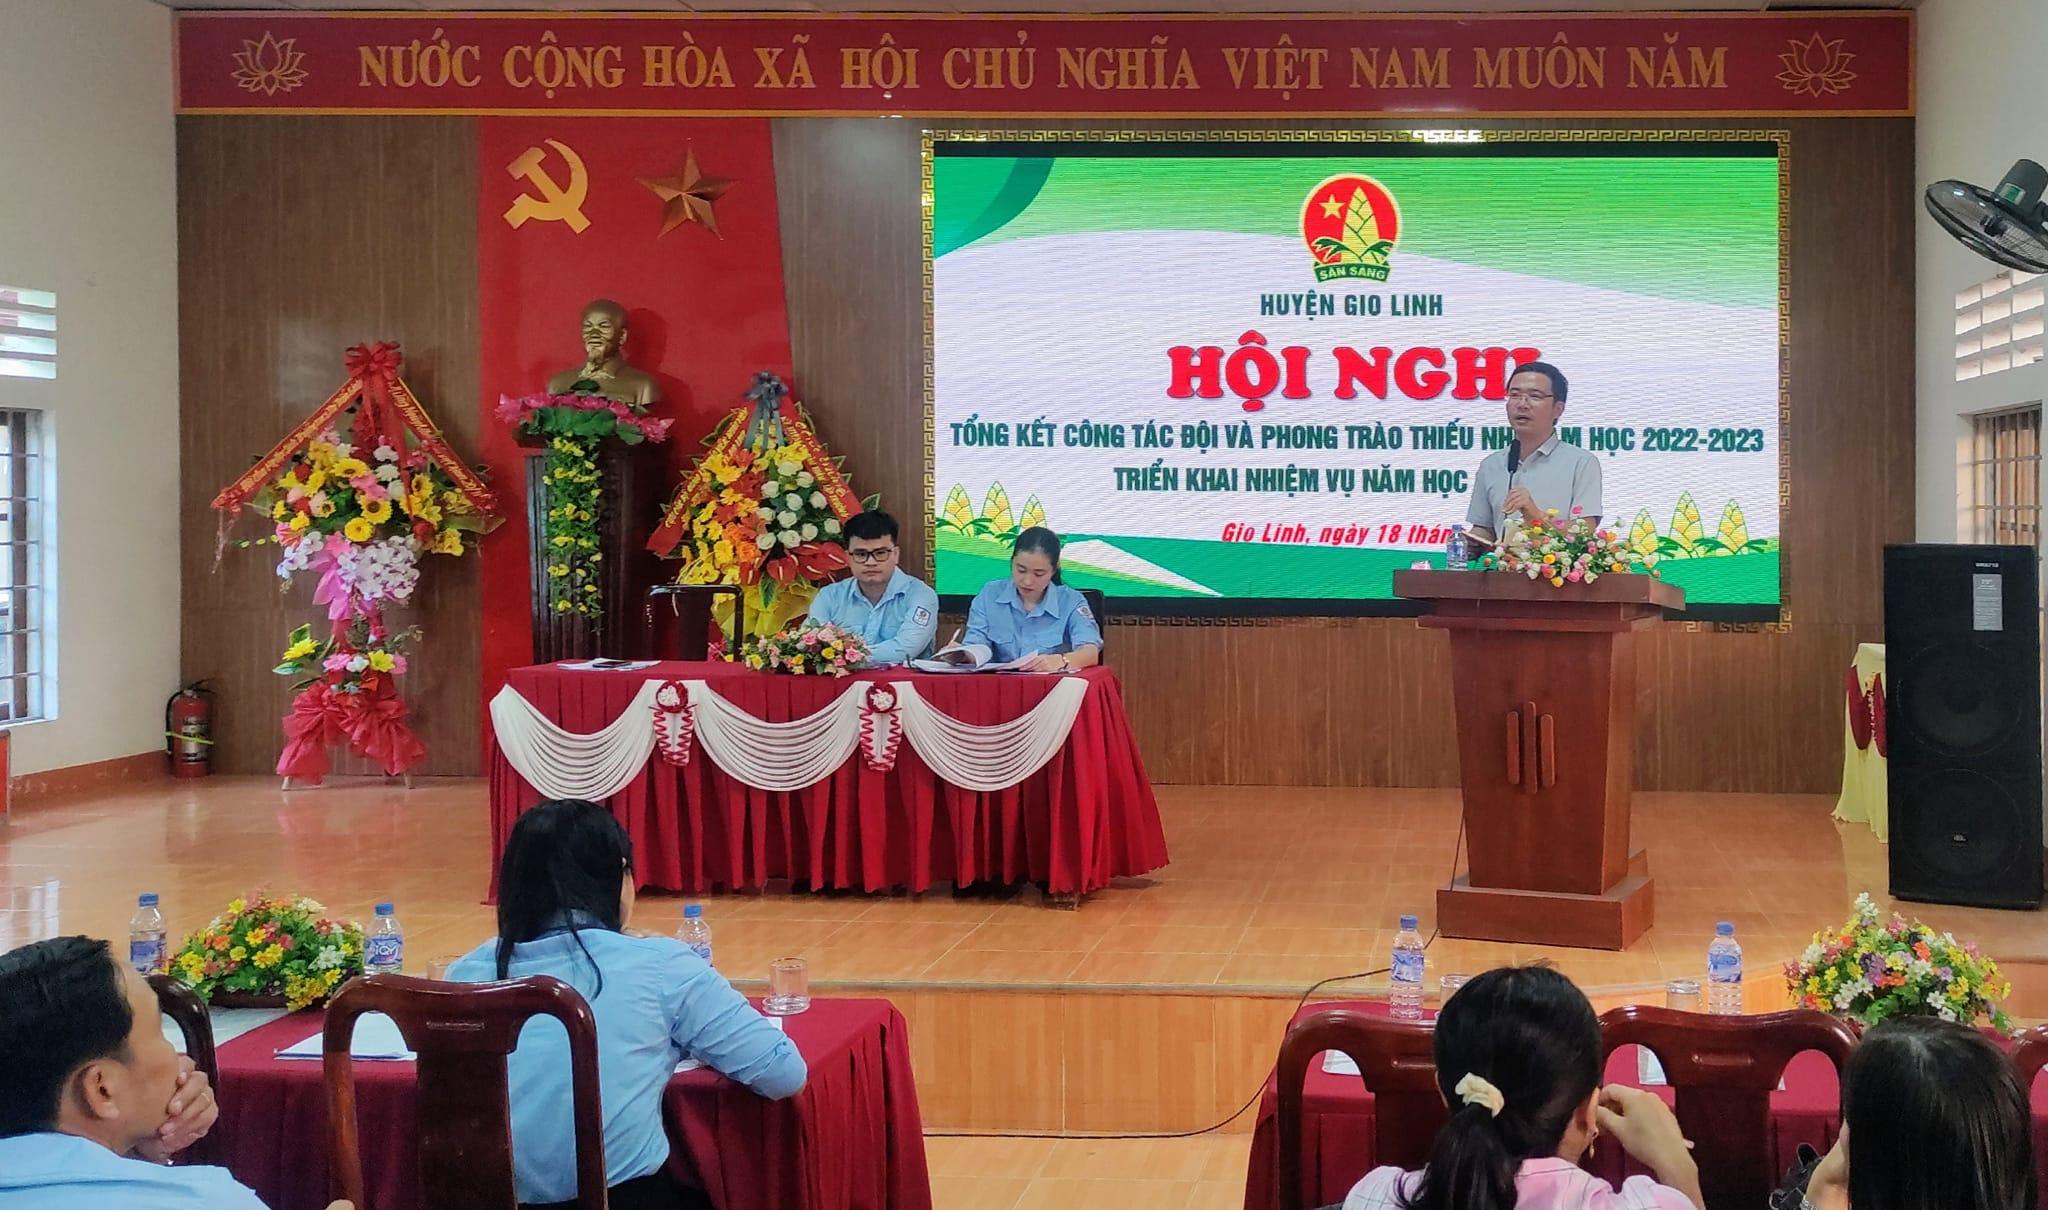 Hội đồng Đội huyện Gio Linh tổ chức Hội nghị tổng kết công tác Đội và phong trào thiếu nhi năm học...